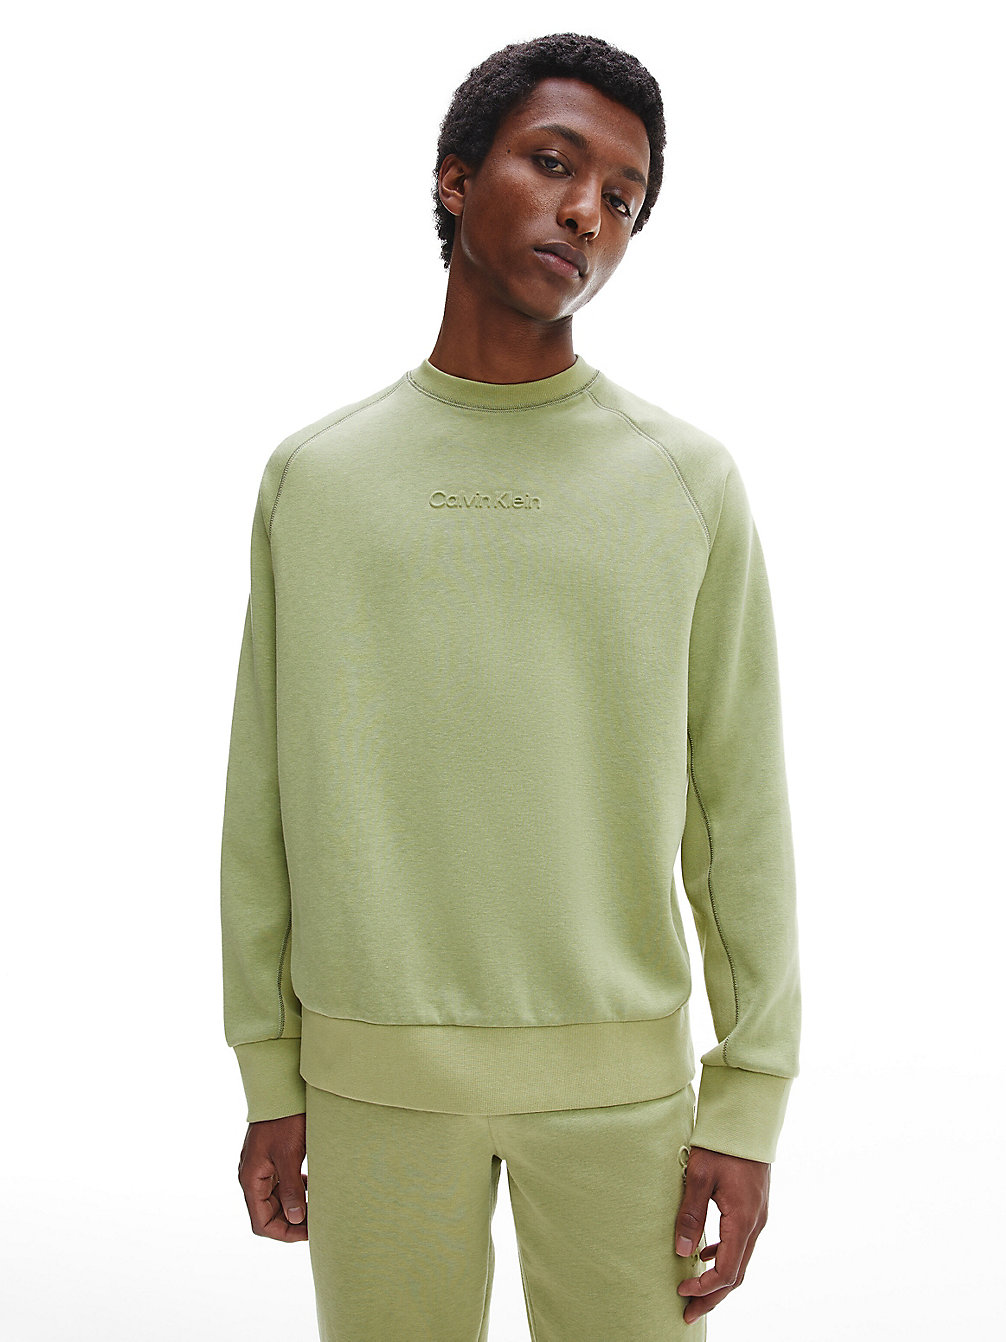 SAGE > Lässiges Sweatshirt Mit Geprägtem Logo > undefined Herren - Calvin Klein